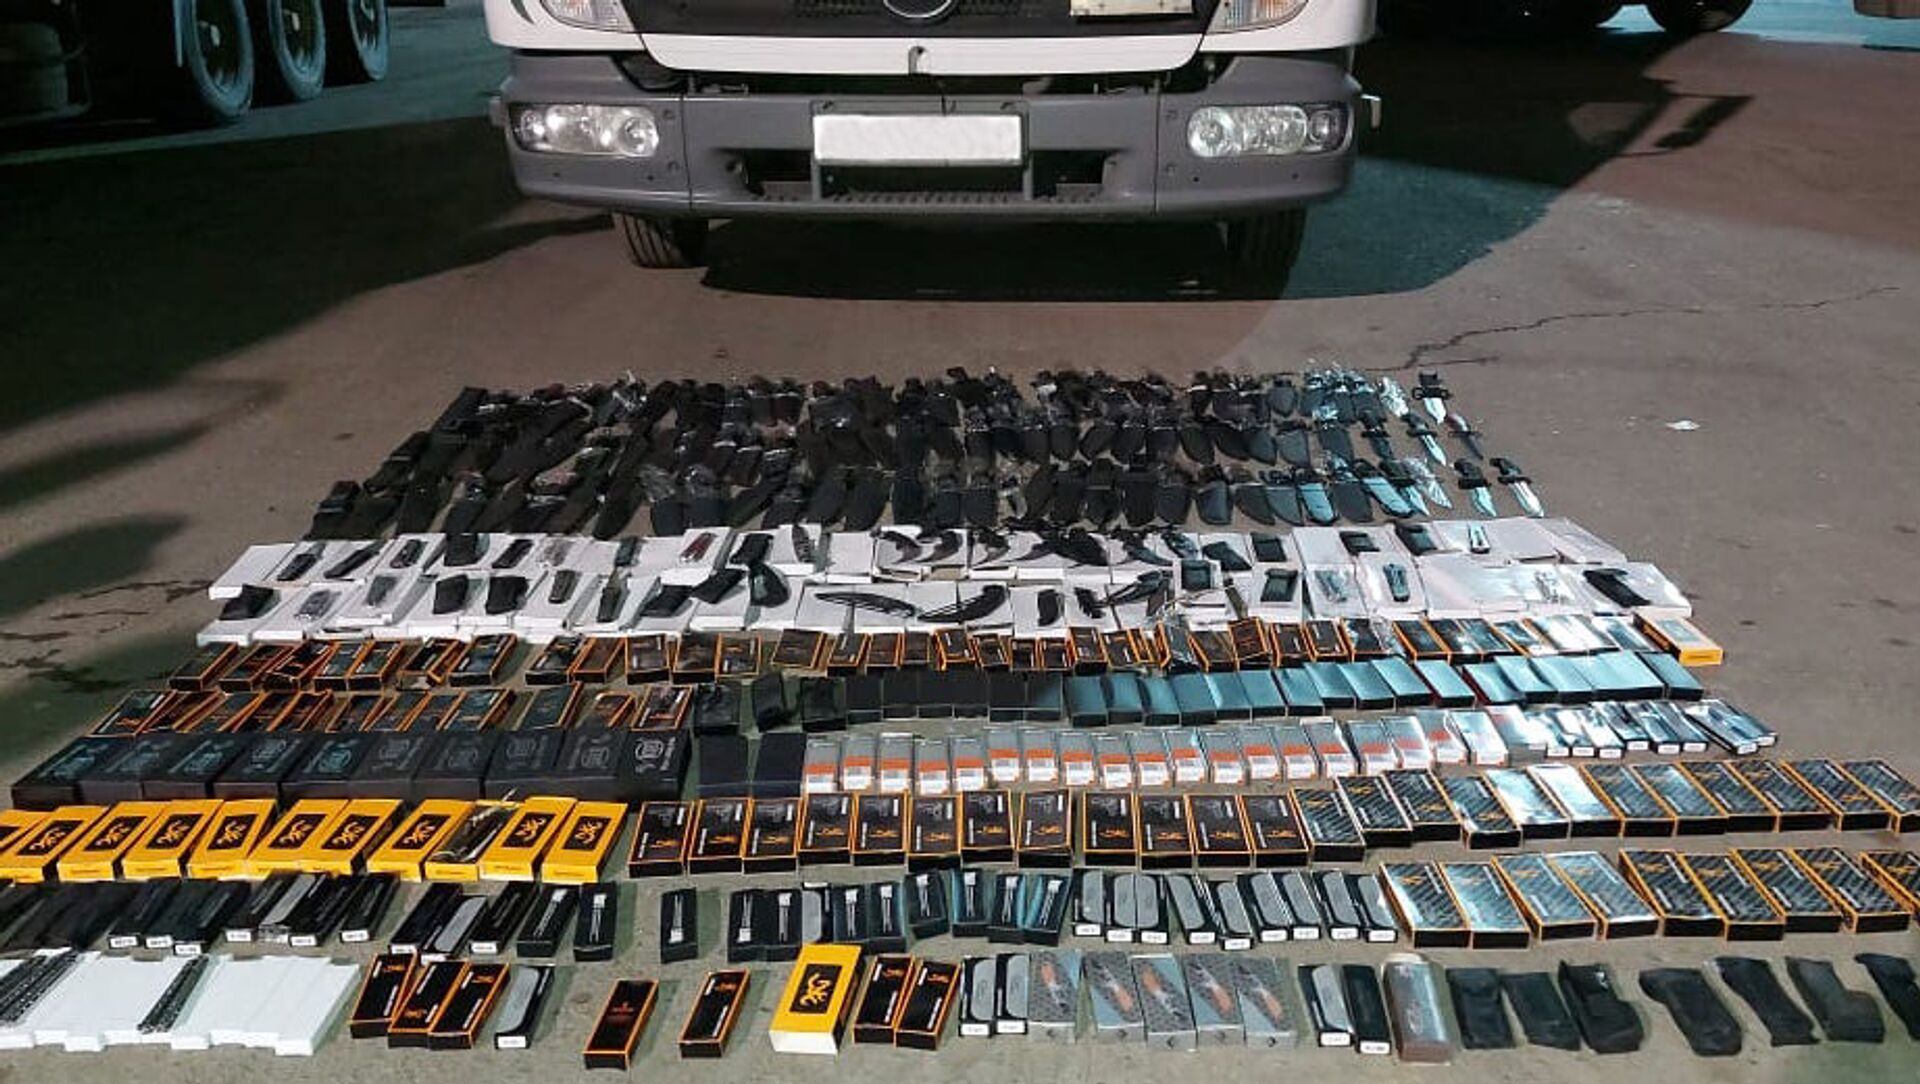 Нескольких сотен ножей обнаруженные в автомобиле грузинского гражданина - Sputnik Азербайджан, 1920, 28.04.2021